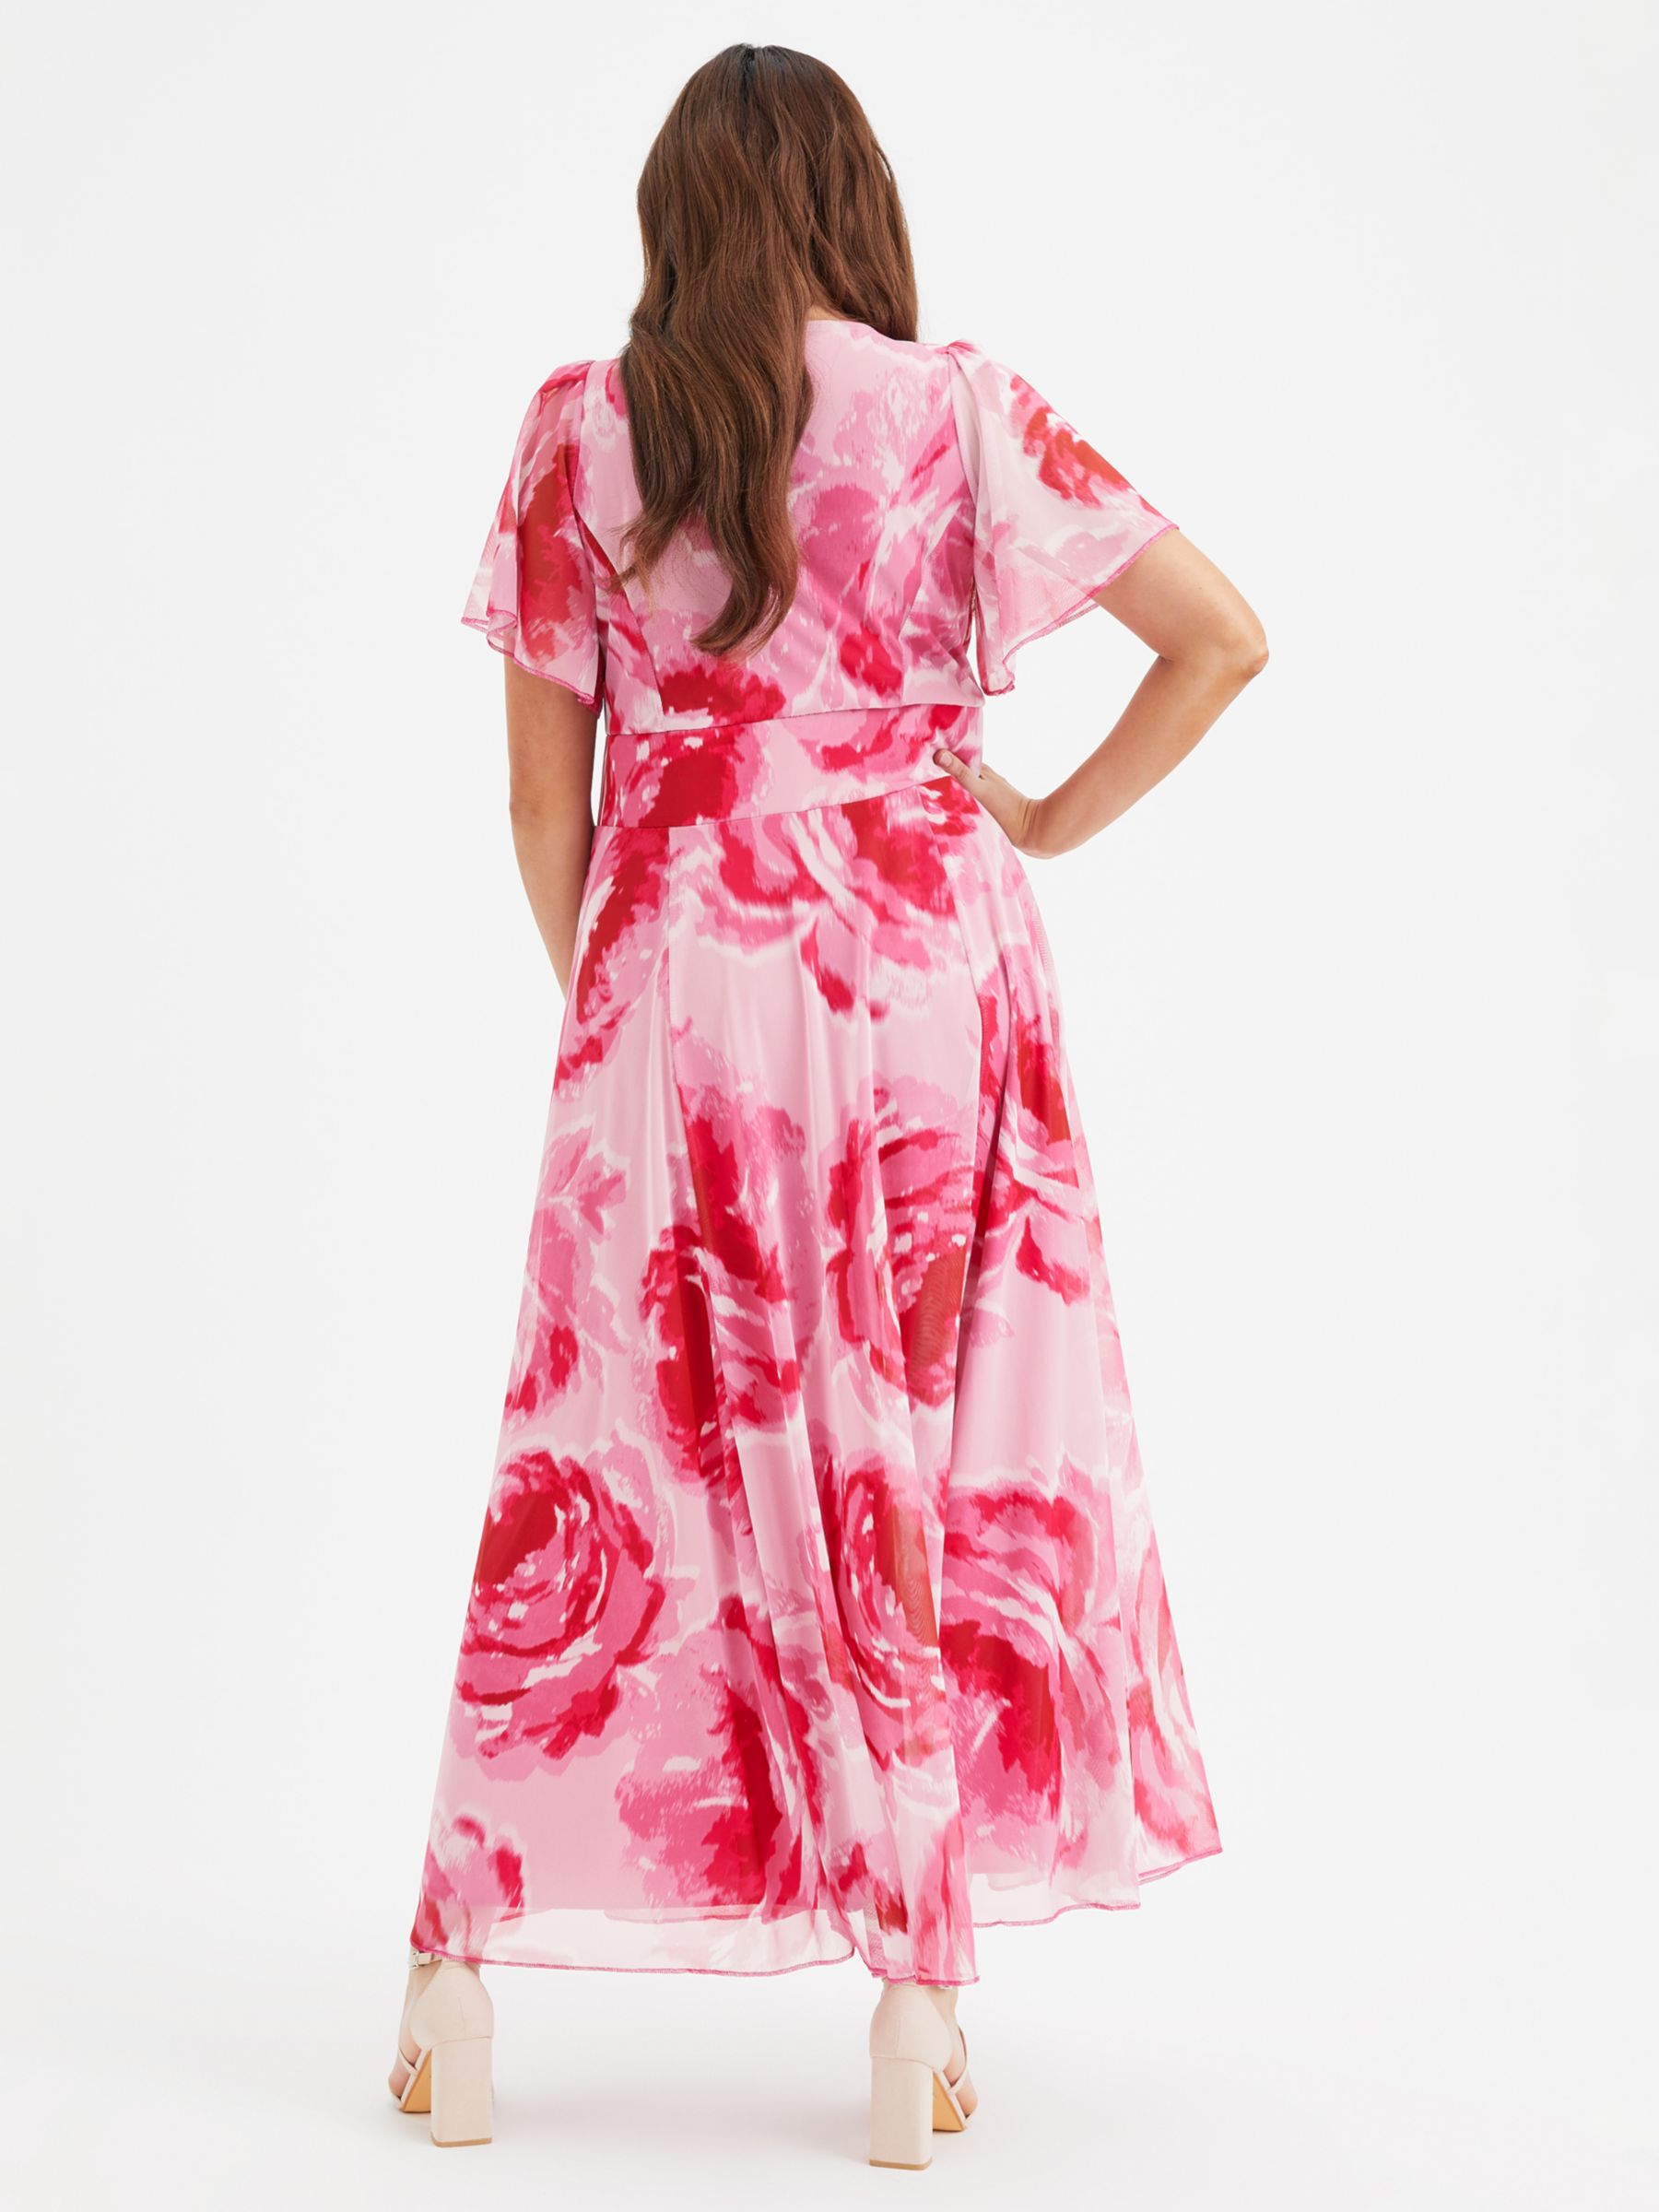 Scarlett & Jo Kemi Floral Maxi Dress, Pink Rose, 20